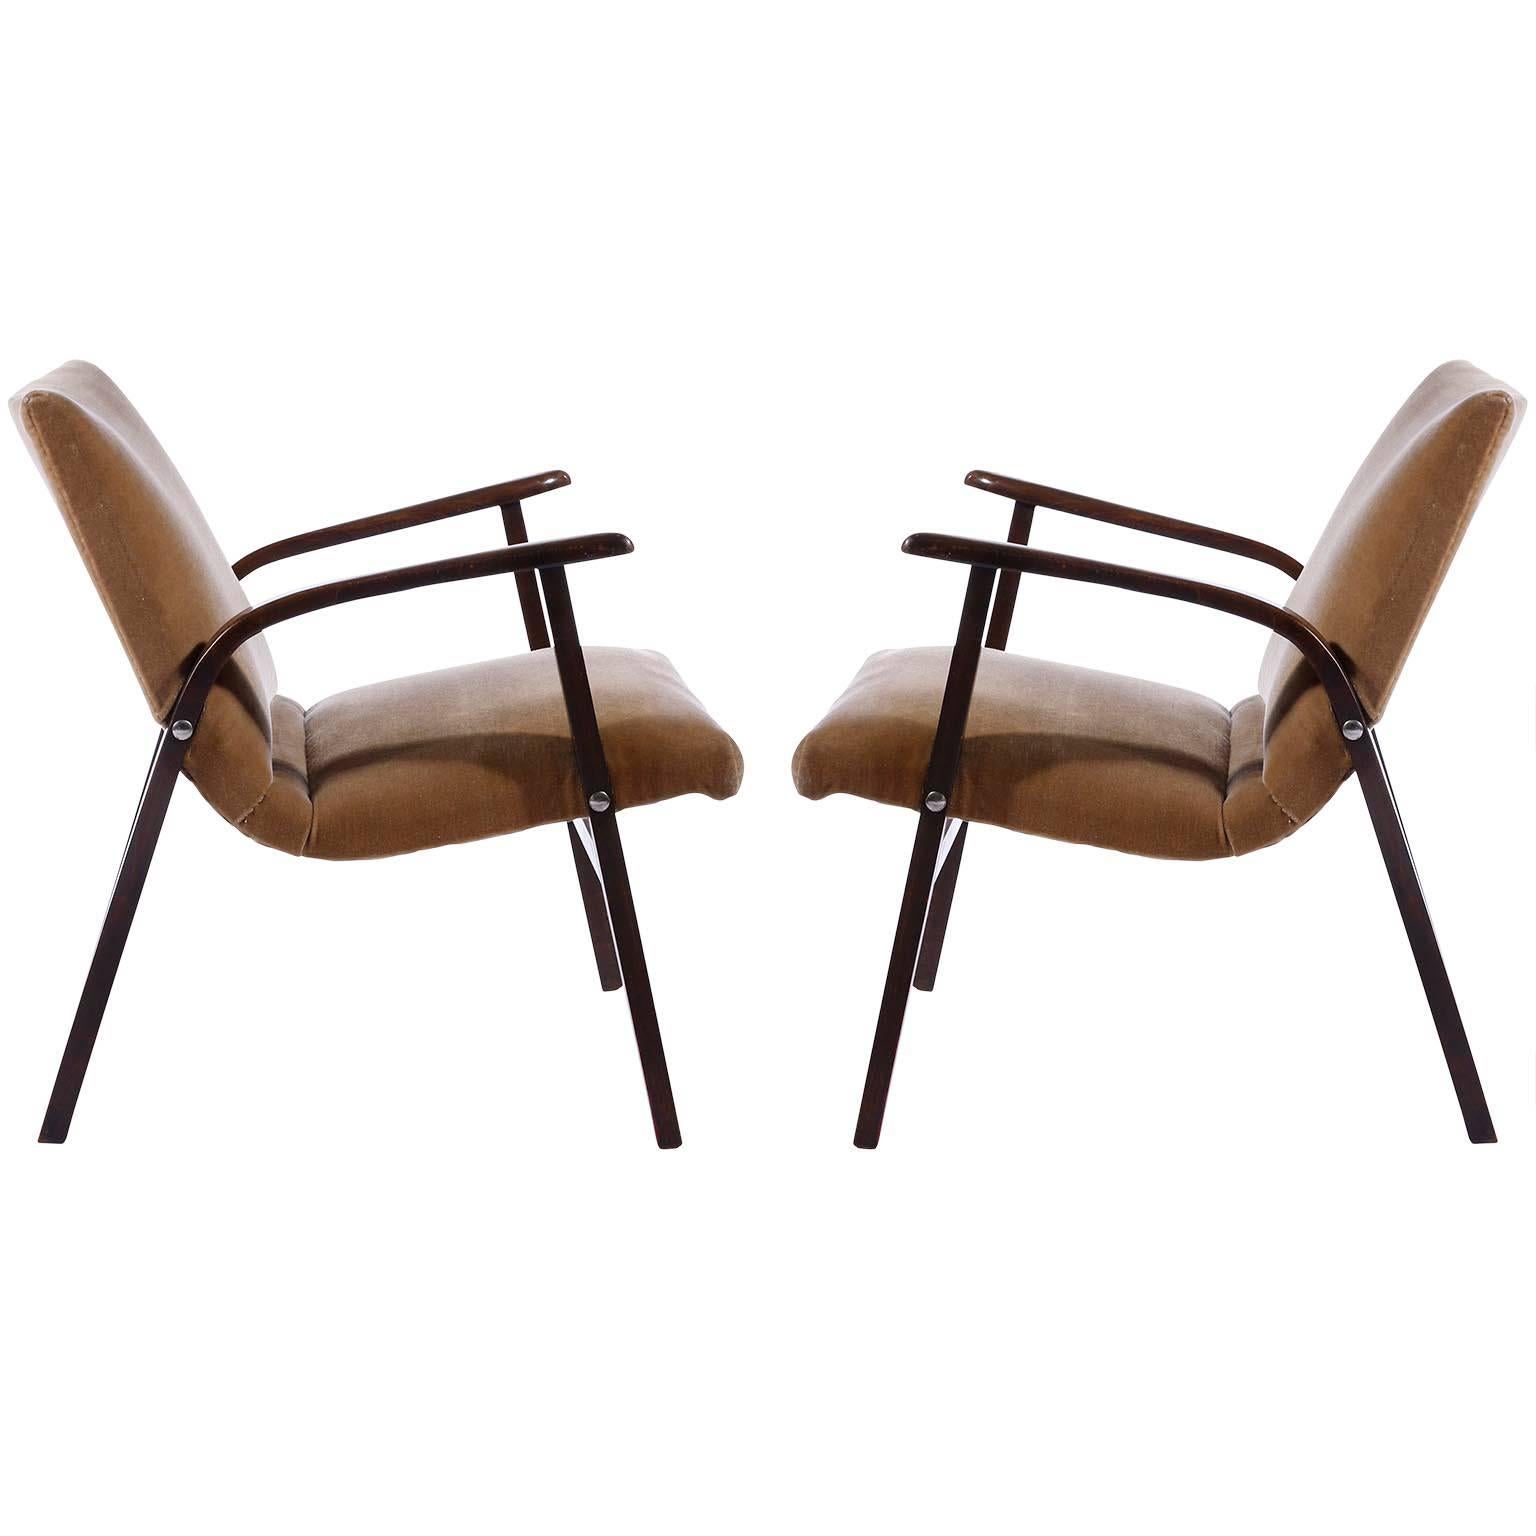 Ein Paar Loungesessel aus der Mitte des Jahrhunderts, entworfen von Roland Rainer für das Cafe Ritter in Wien, Österreich, im Jahr 1952 und hergestellt von Emil & Alfred Pollak.
Die Stühle sind in sehr gutem Zustand. Wahrscheinlich wurden sie in der